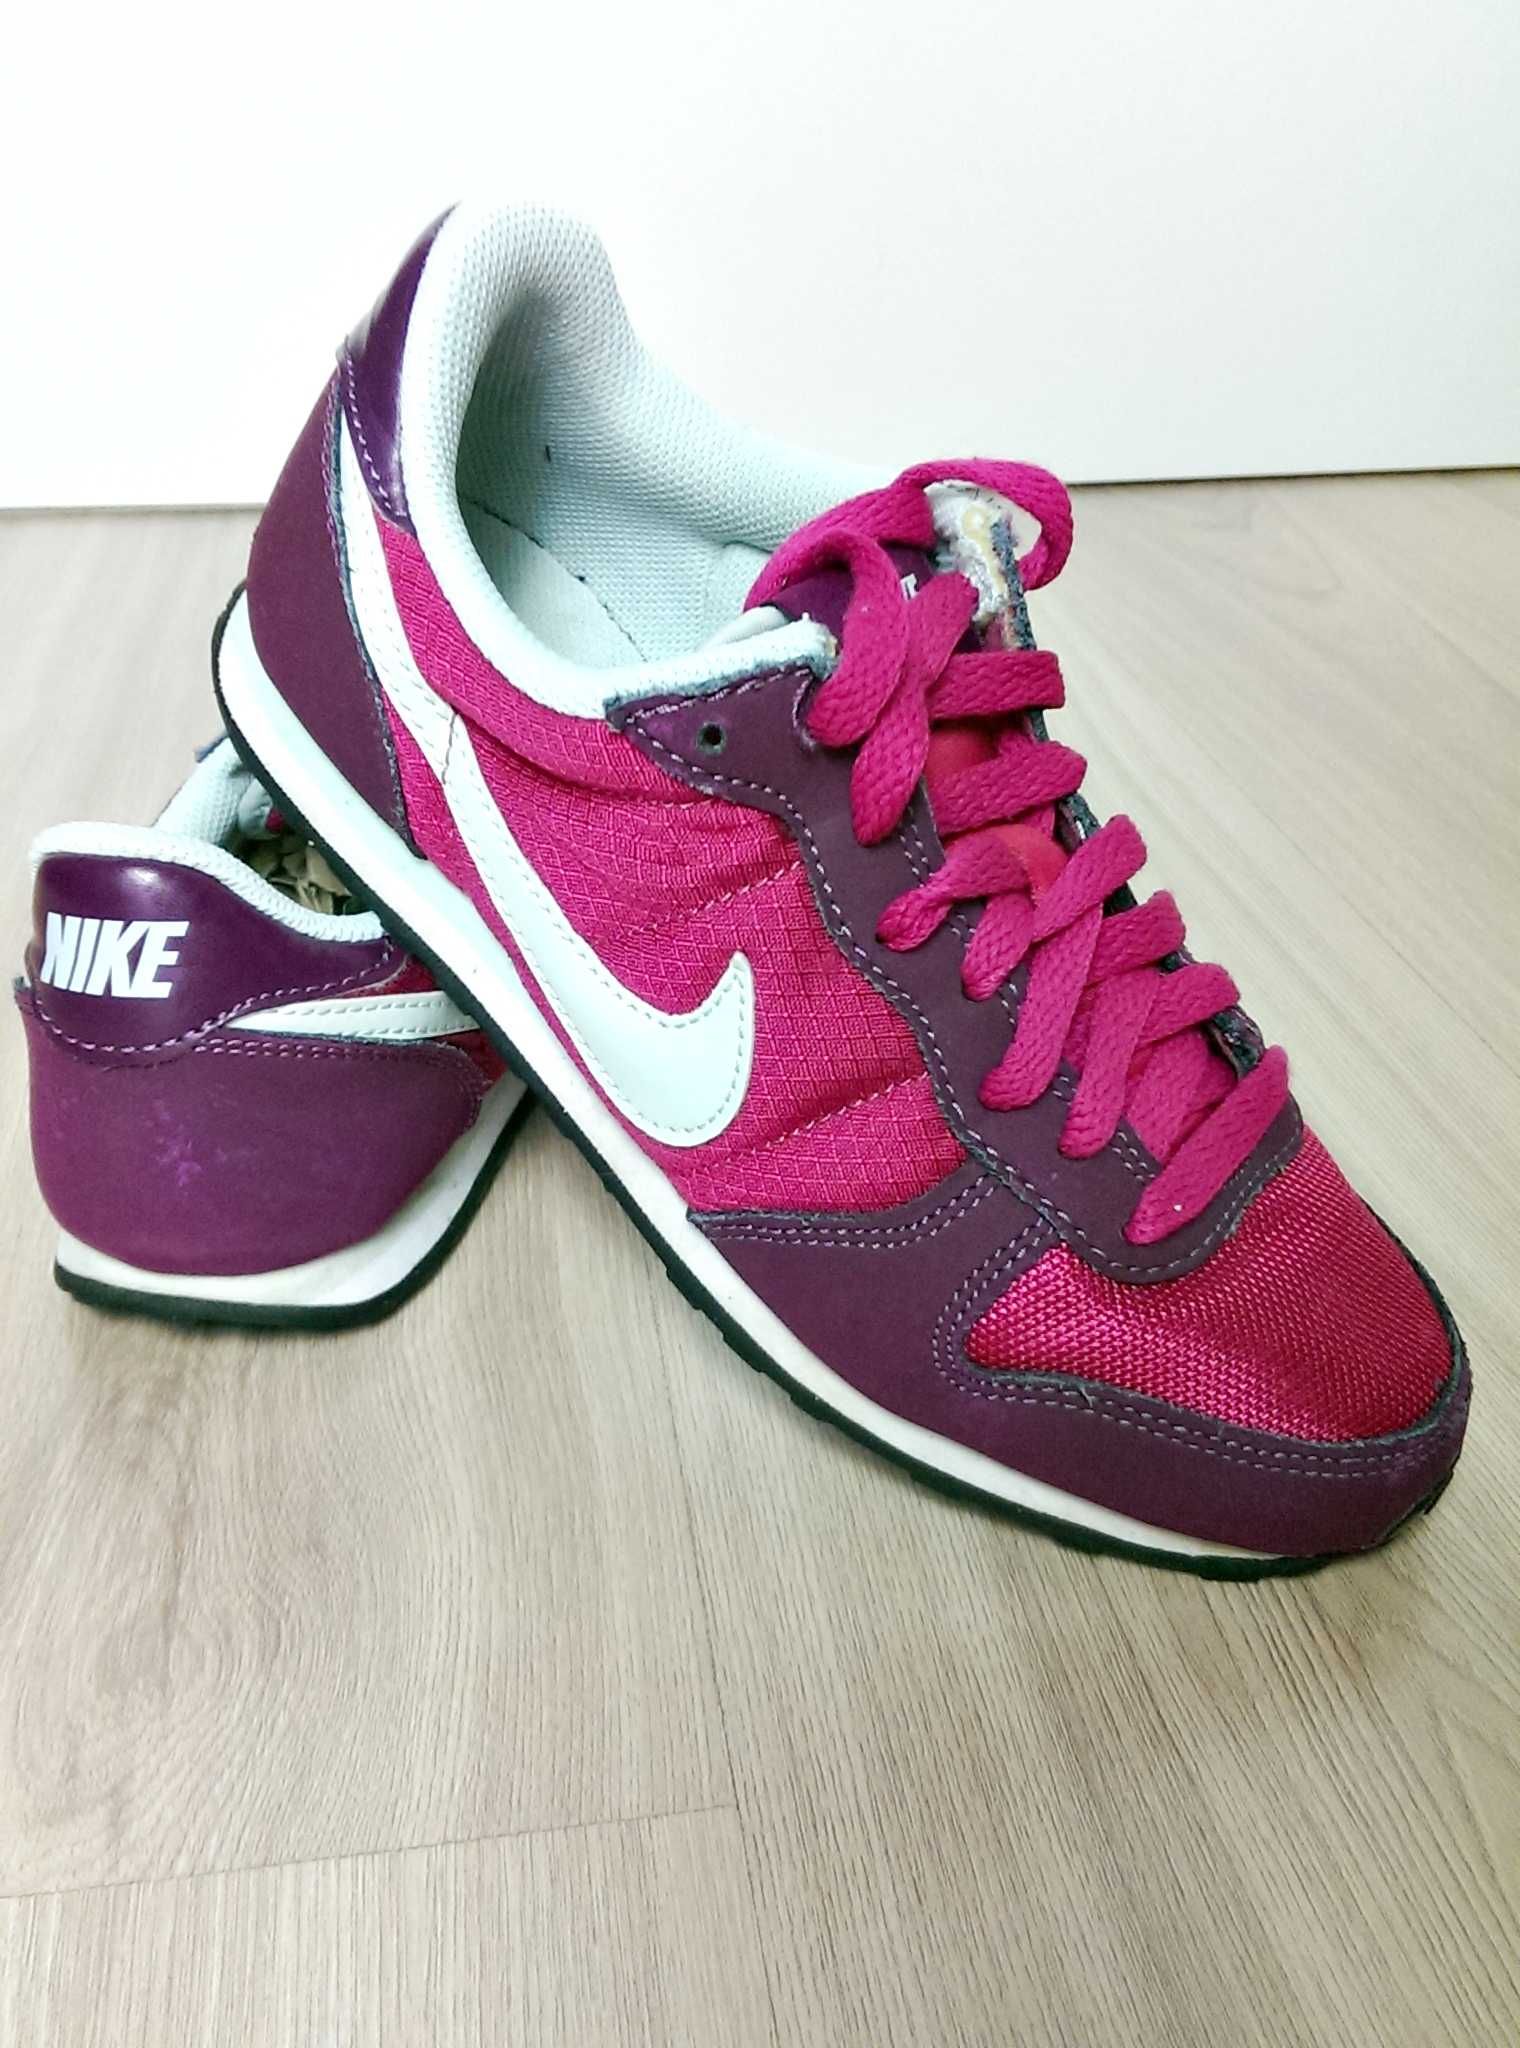 Buty Nike Wmns Genicco 36.5 bordowe różowe fioletowe damskie